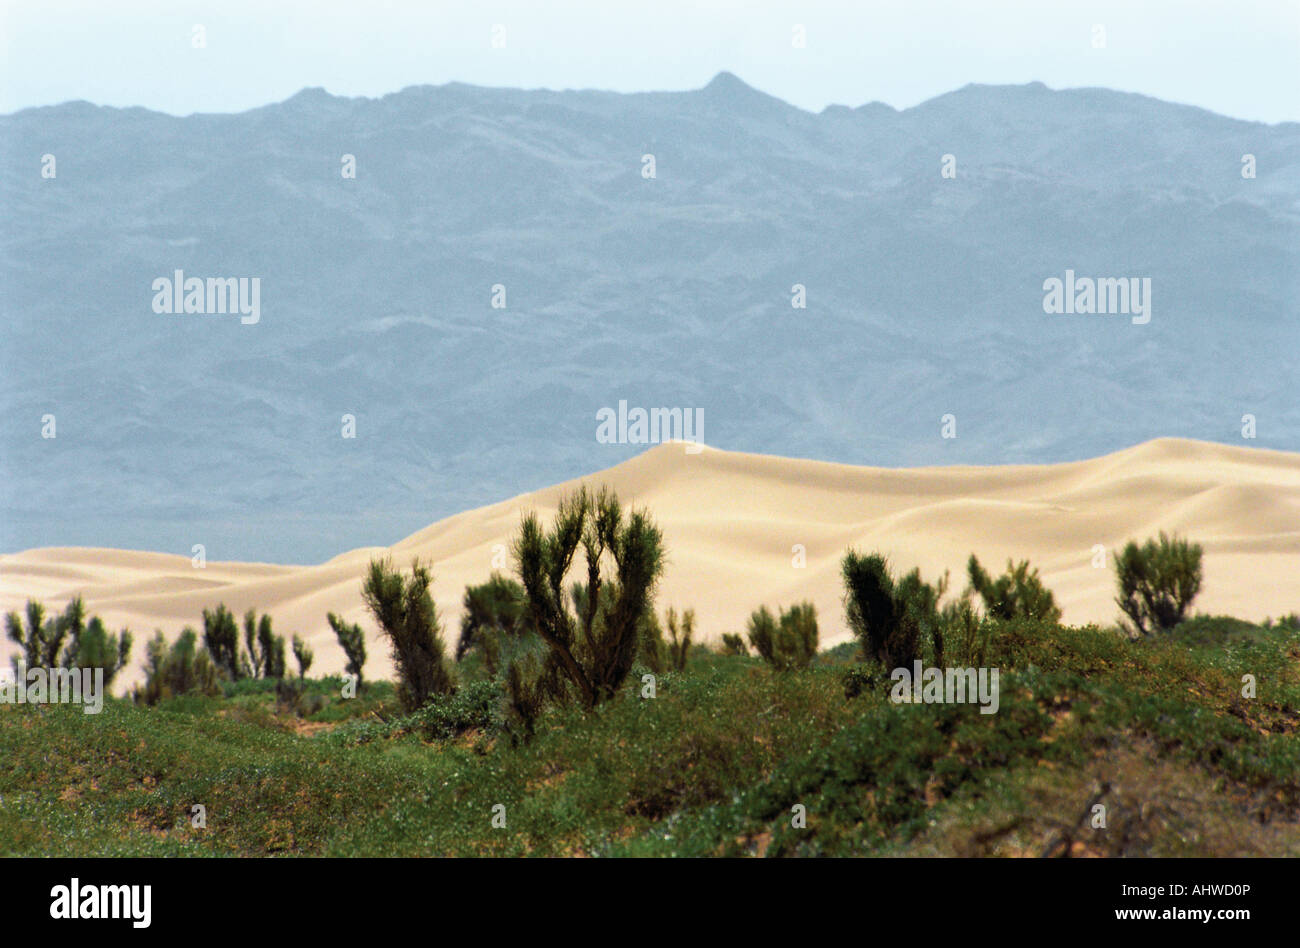 Saxaul (Haloxilon ammodendron).  Khongoryn Els sand dune. Nomgom Uul Range. South Gobi desert. Mongolia Stock Photo